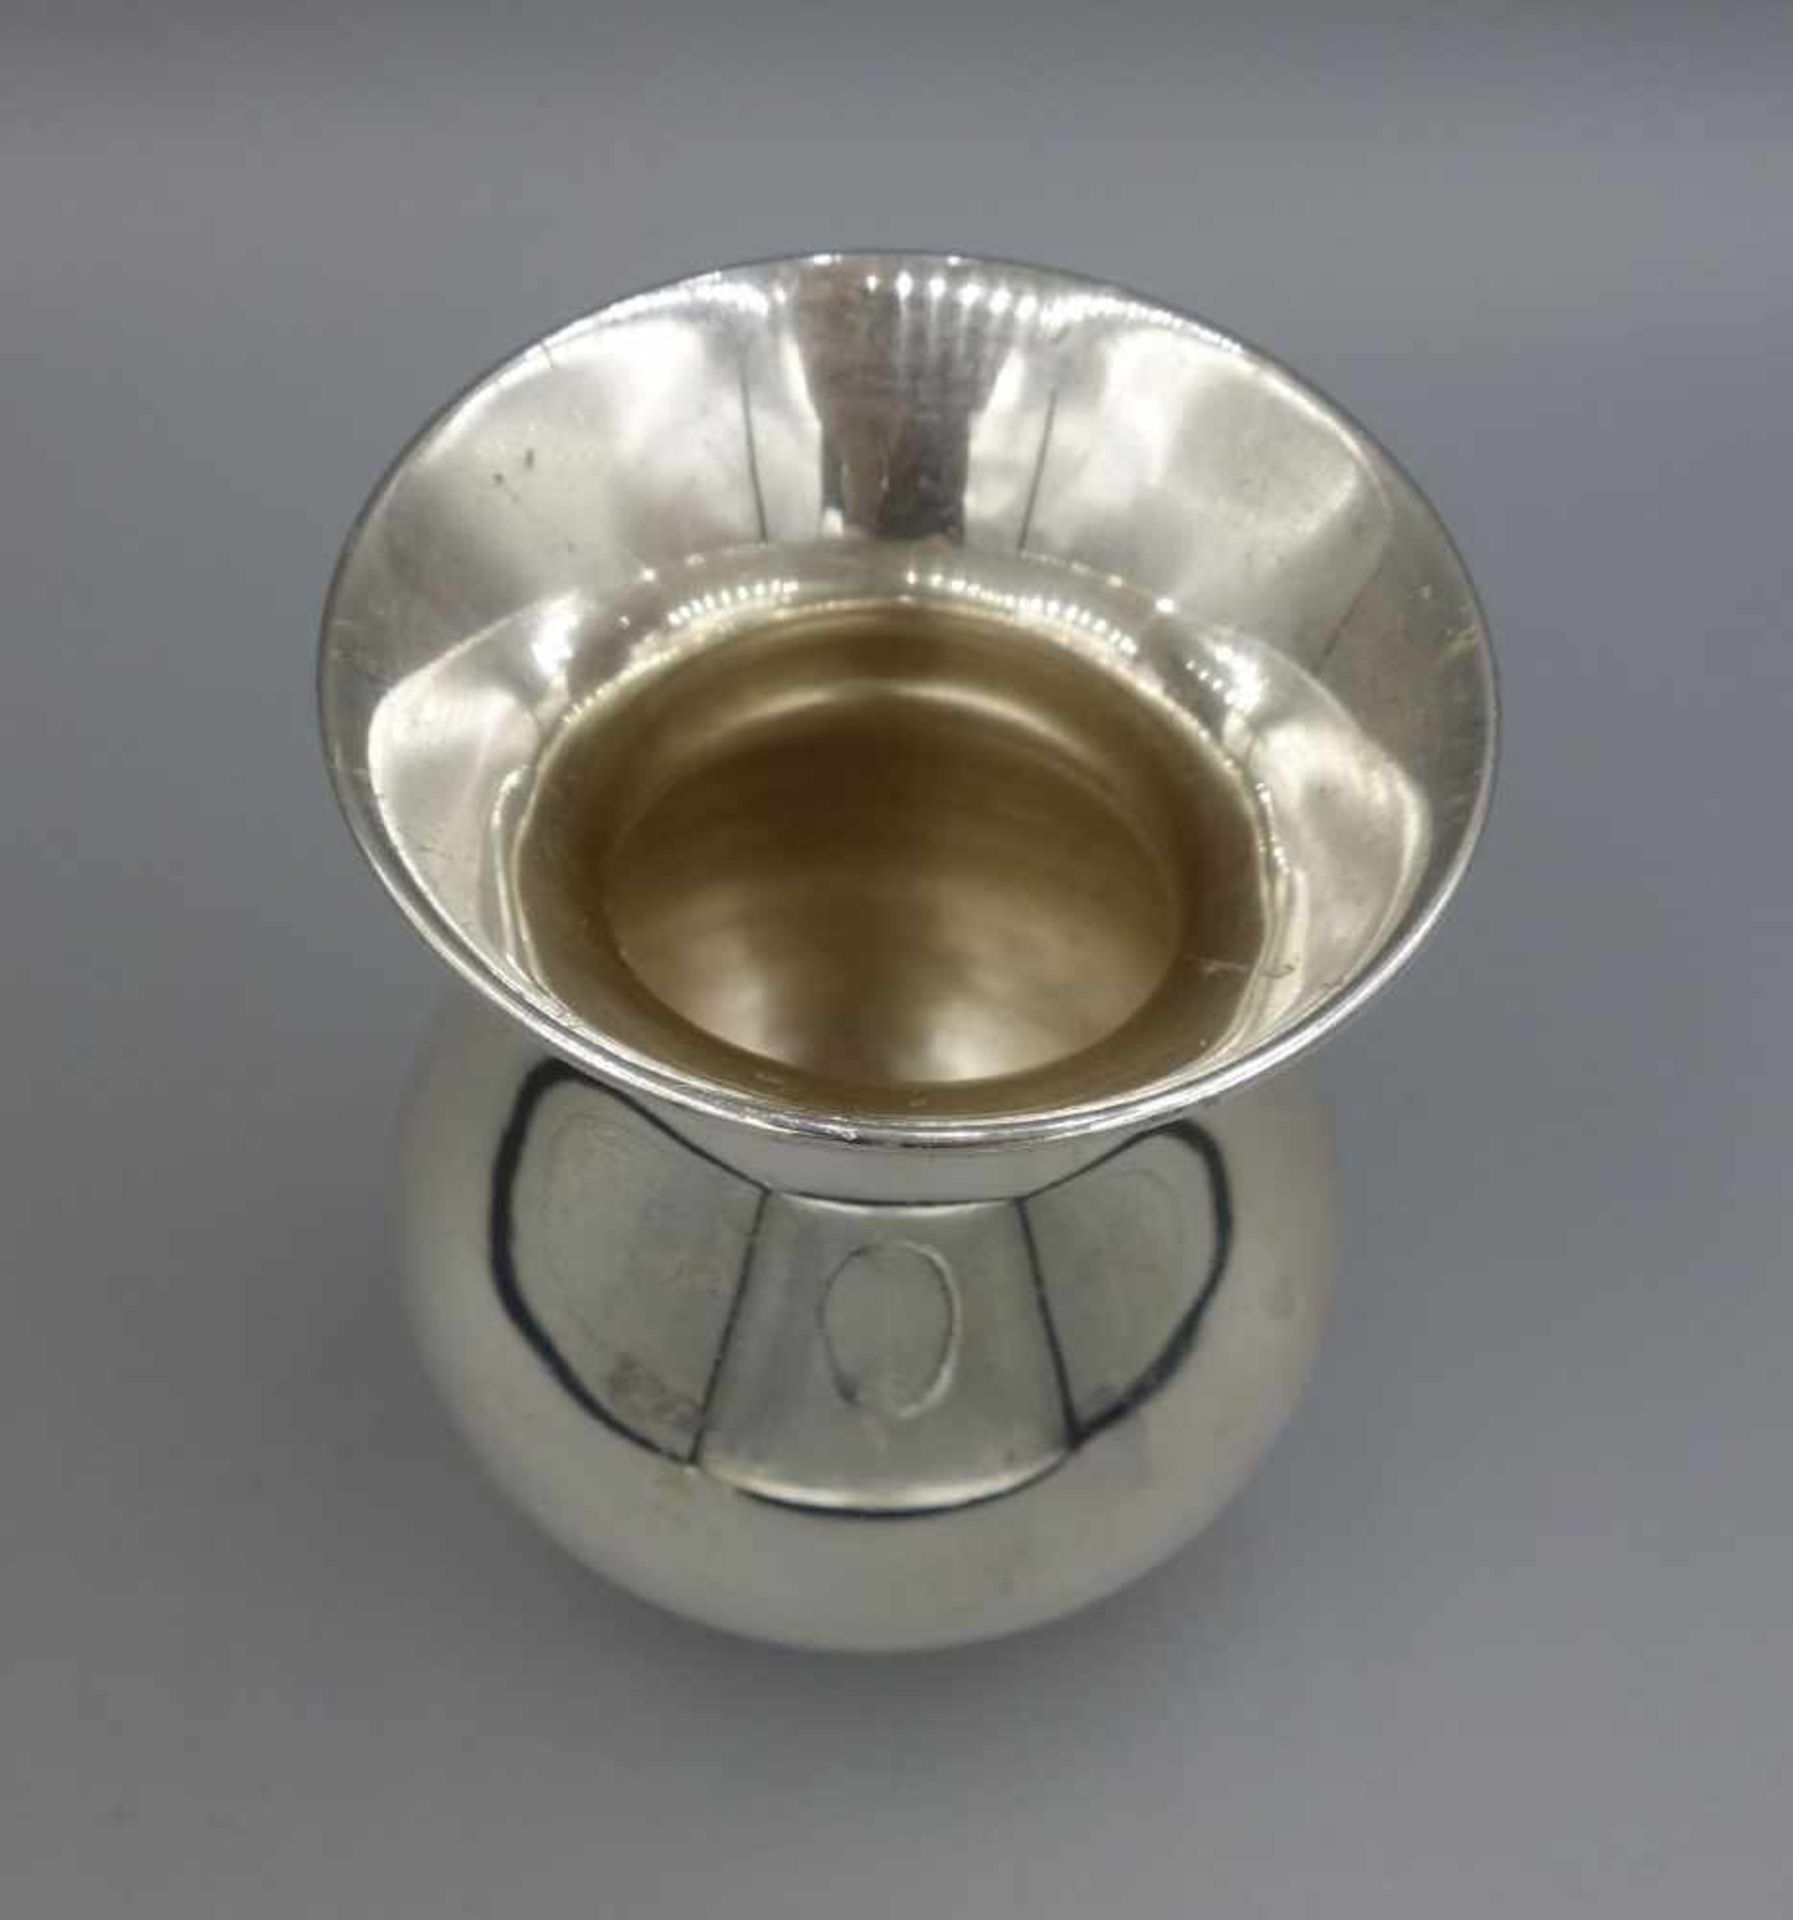 VASE, 925er Silber (80 g), bezeichnet "Sterling" und gepunzt mit Halbmond, Krone, - Image 2 of 3